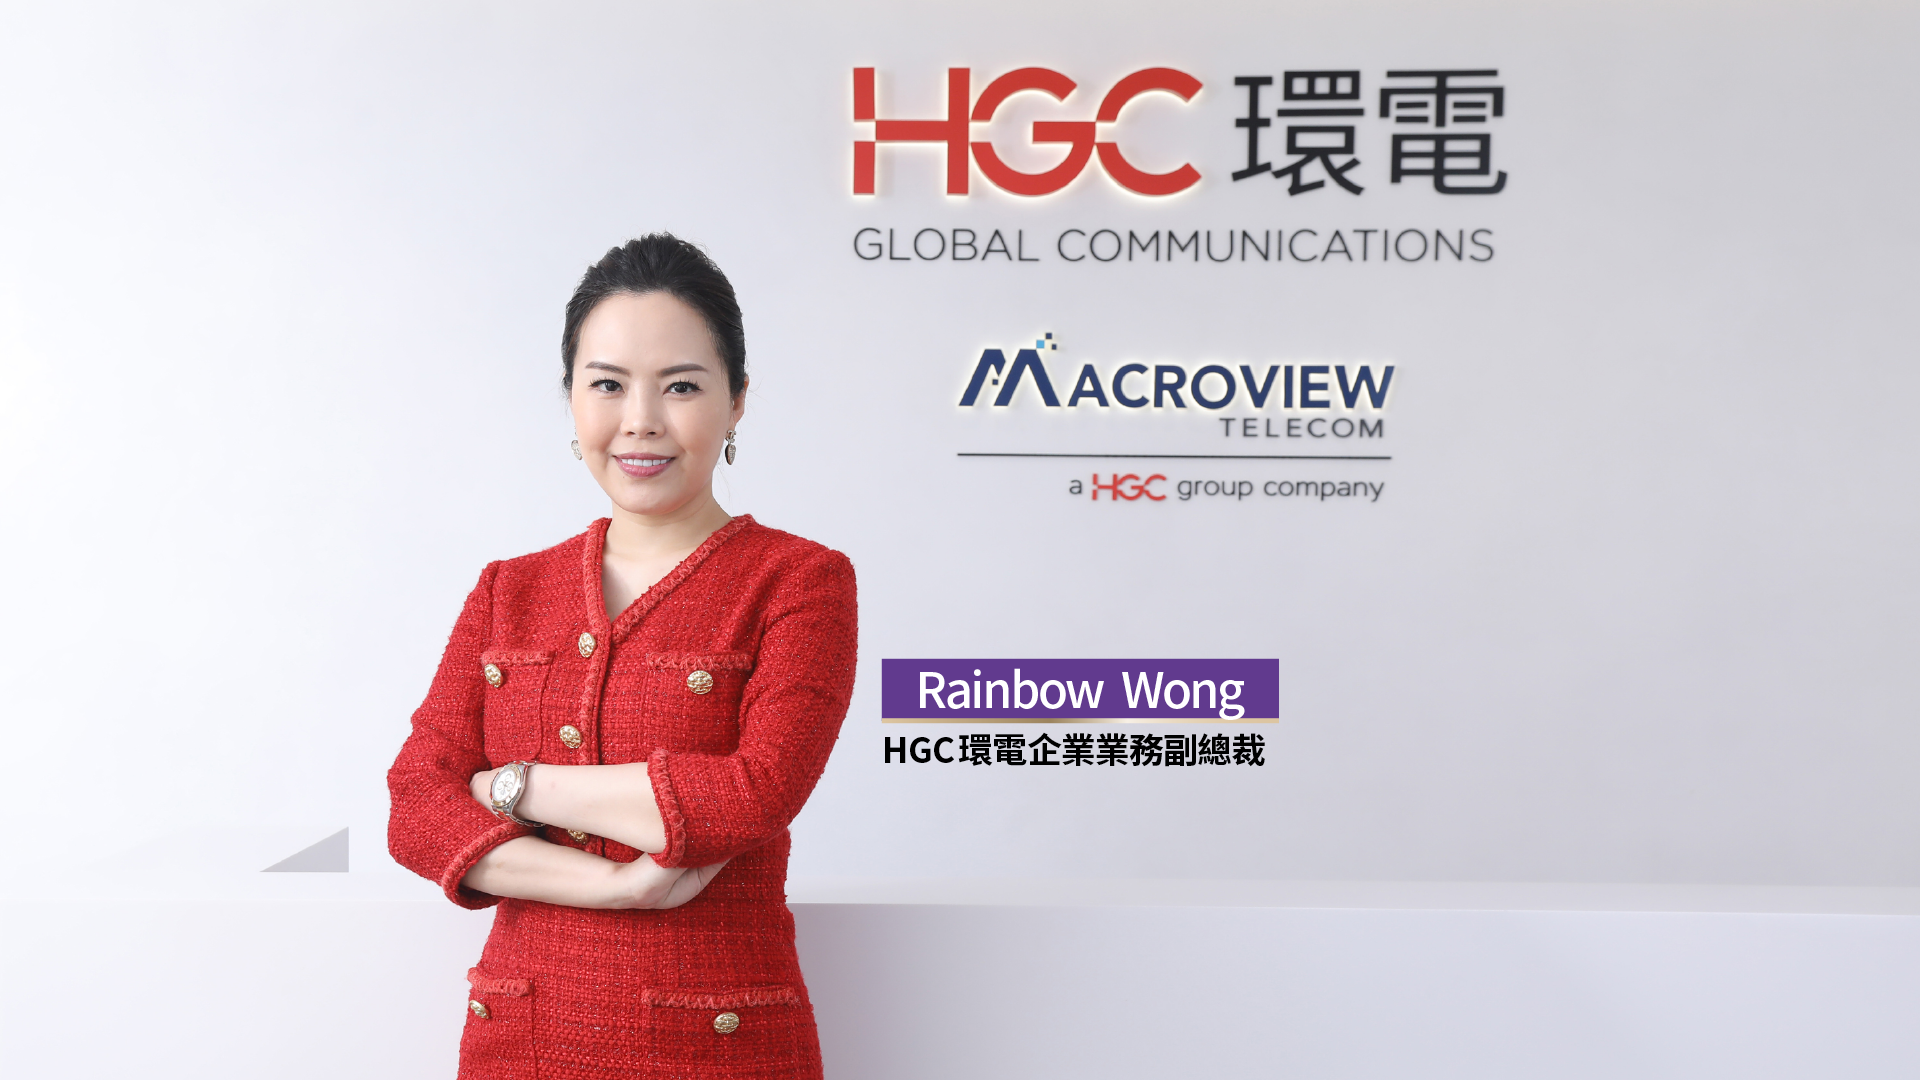 HGC 環電企業業務副總裁 Rainbow Wong